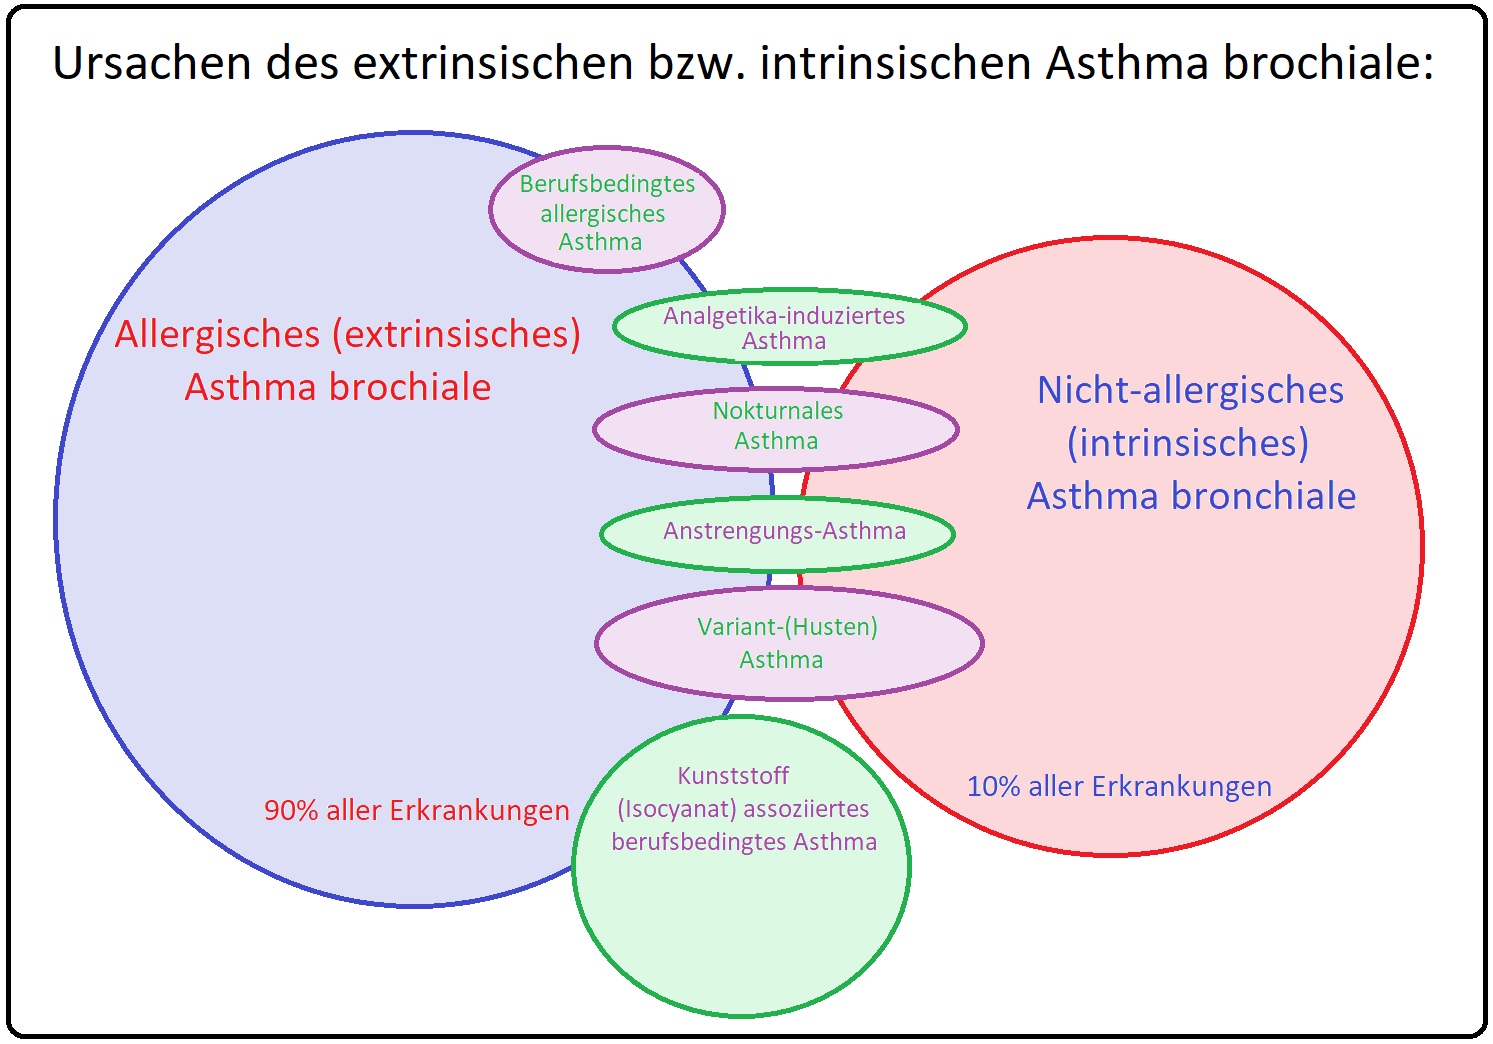 1015 Ursachen des extrinischen bzw. intrinsischen Asthma bronchiale